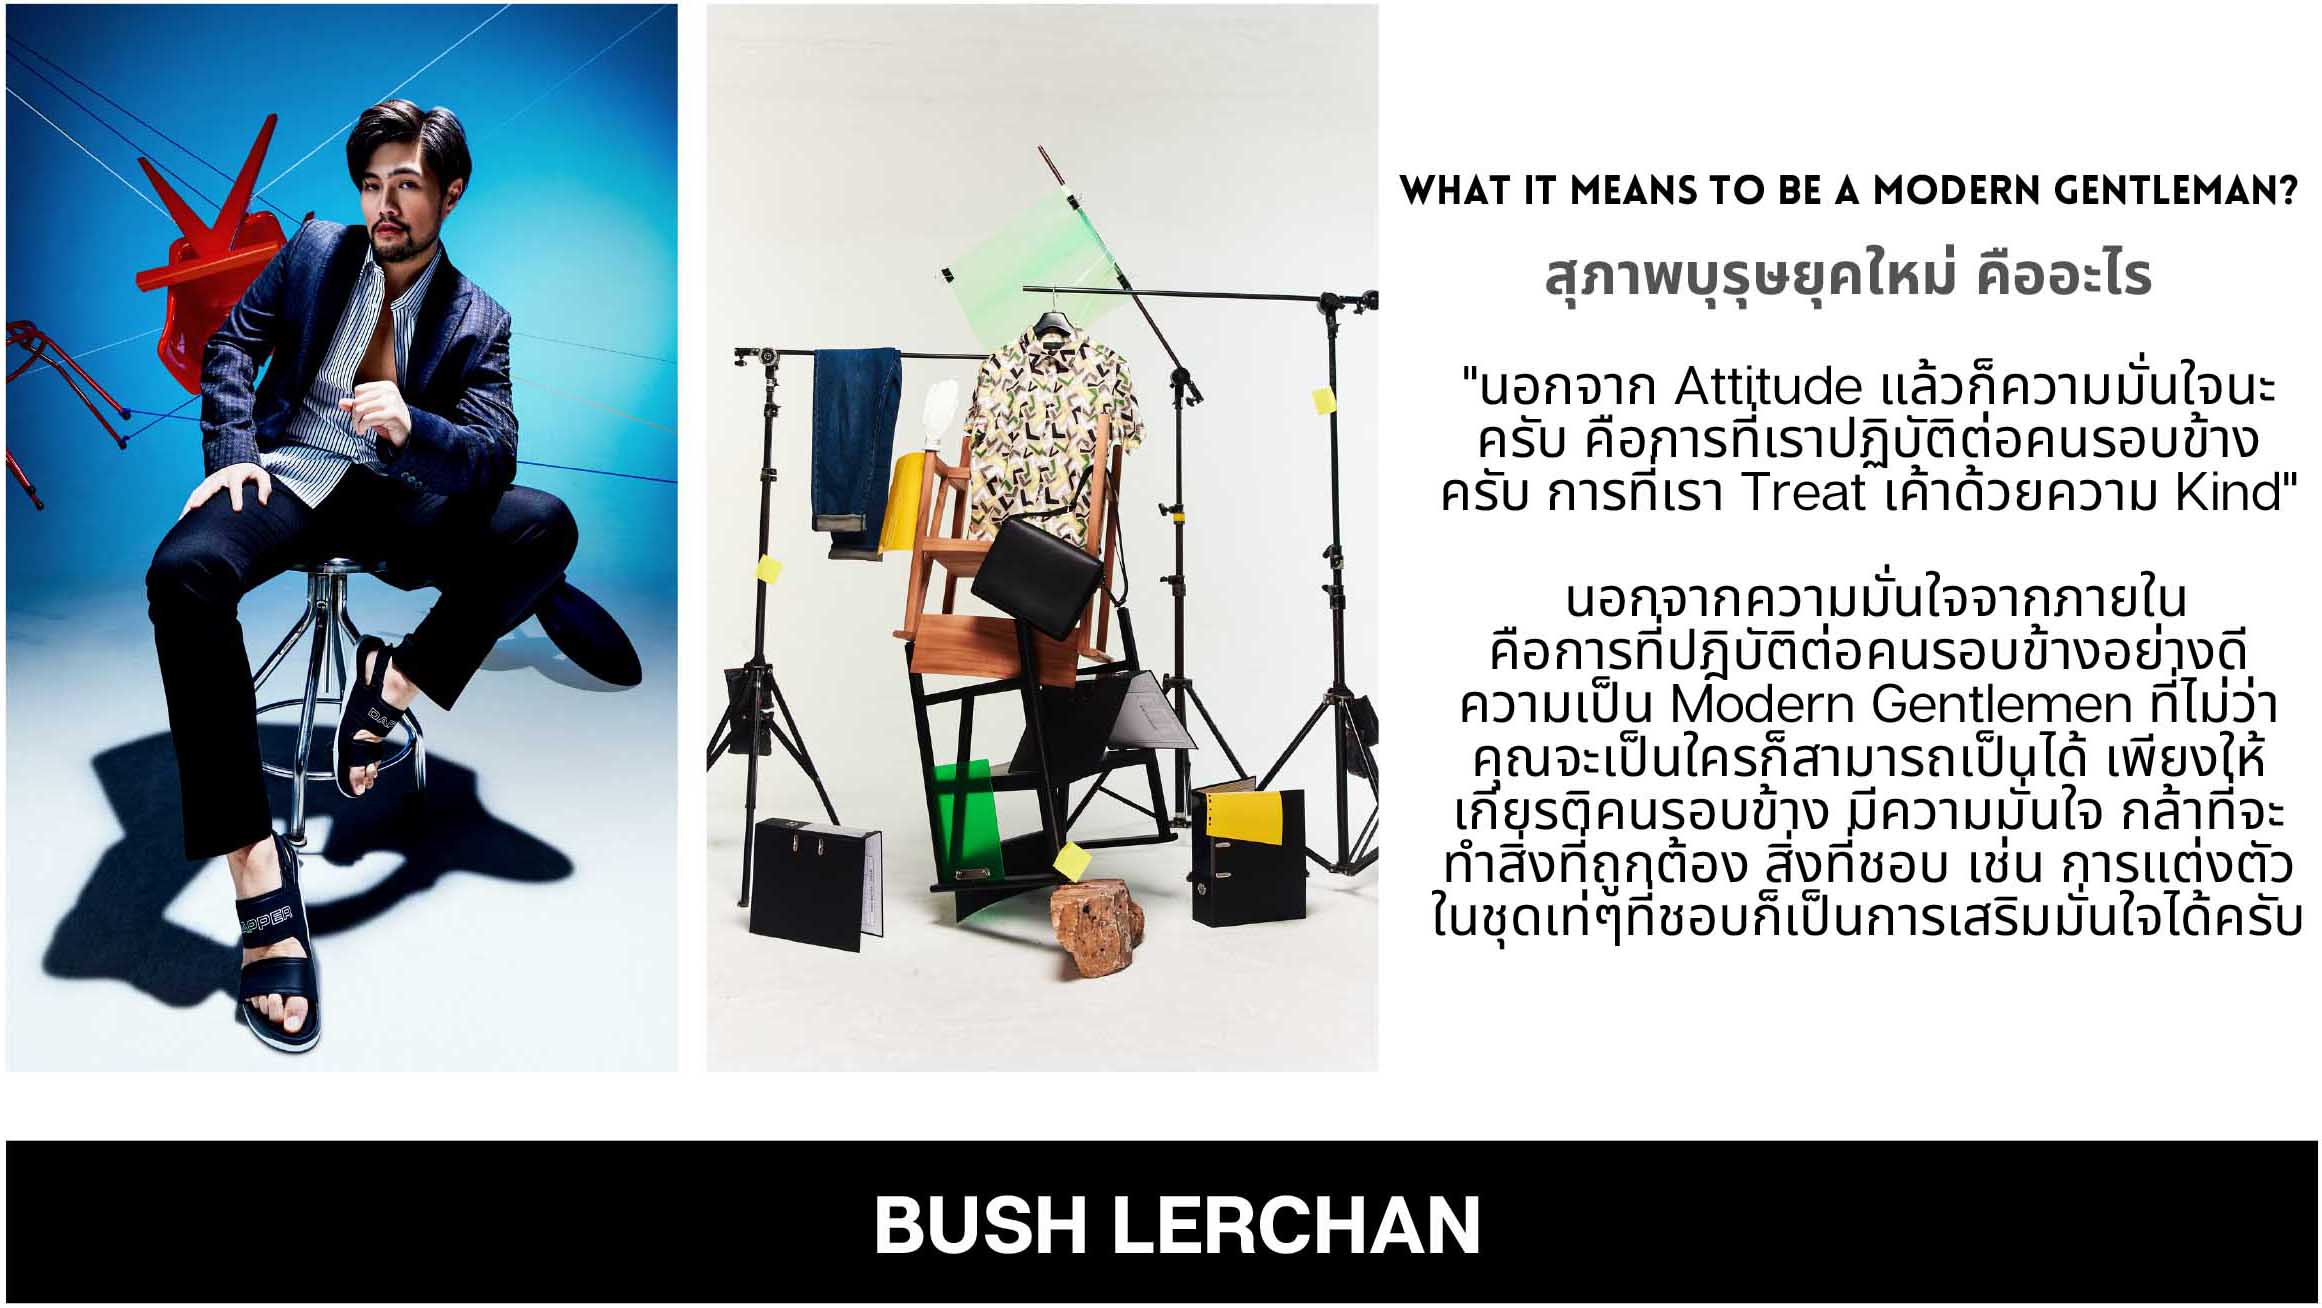 Bush Lerchan